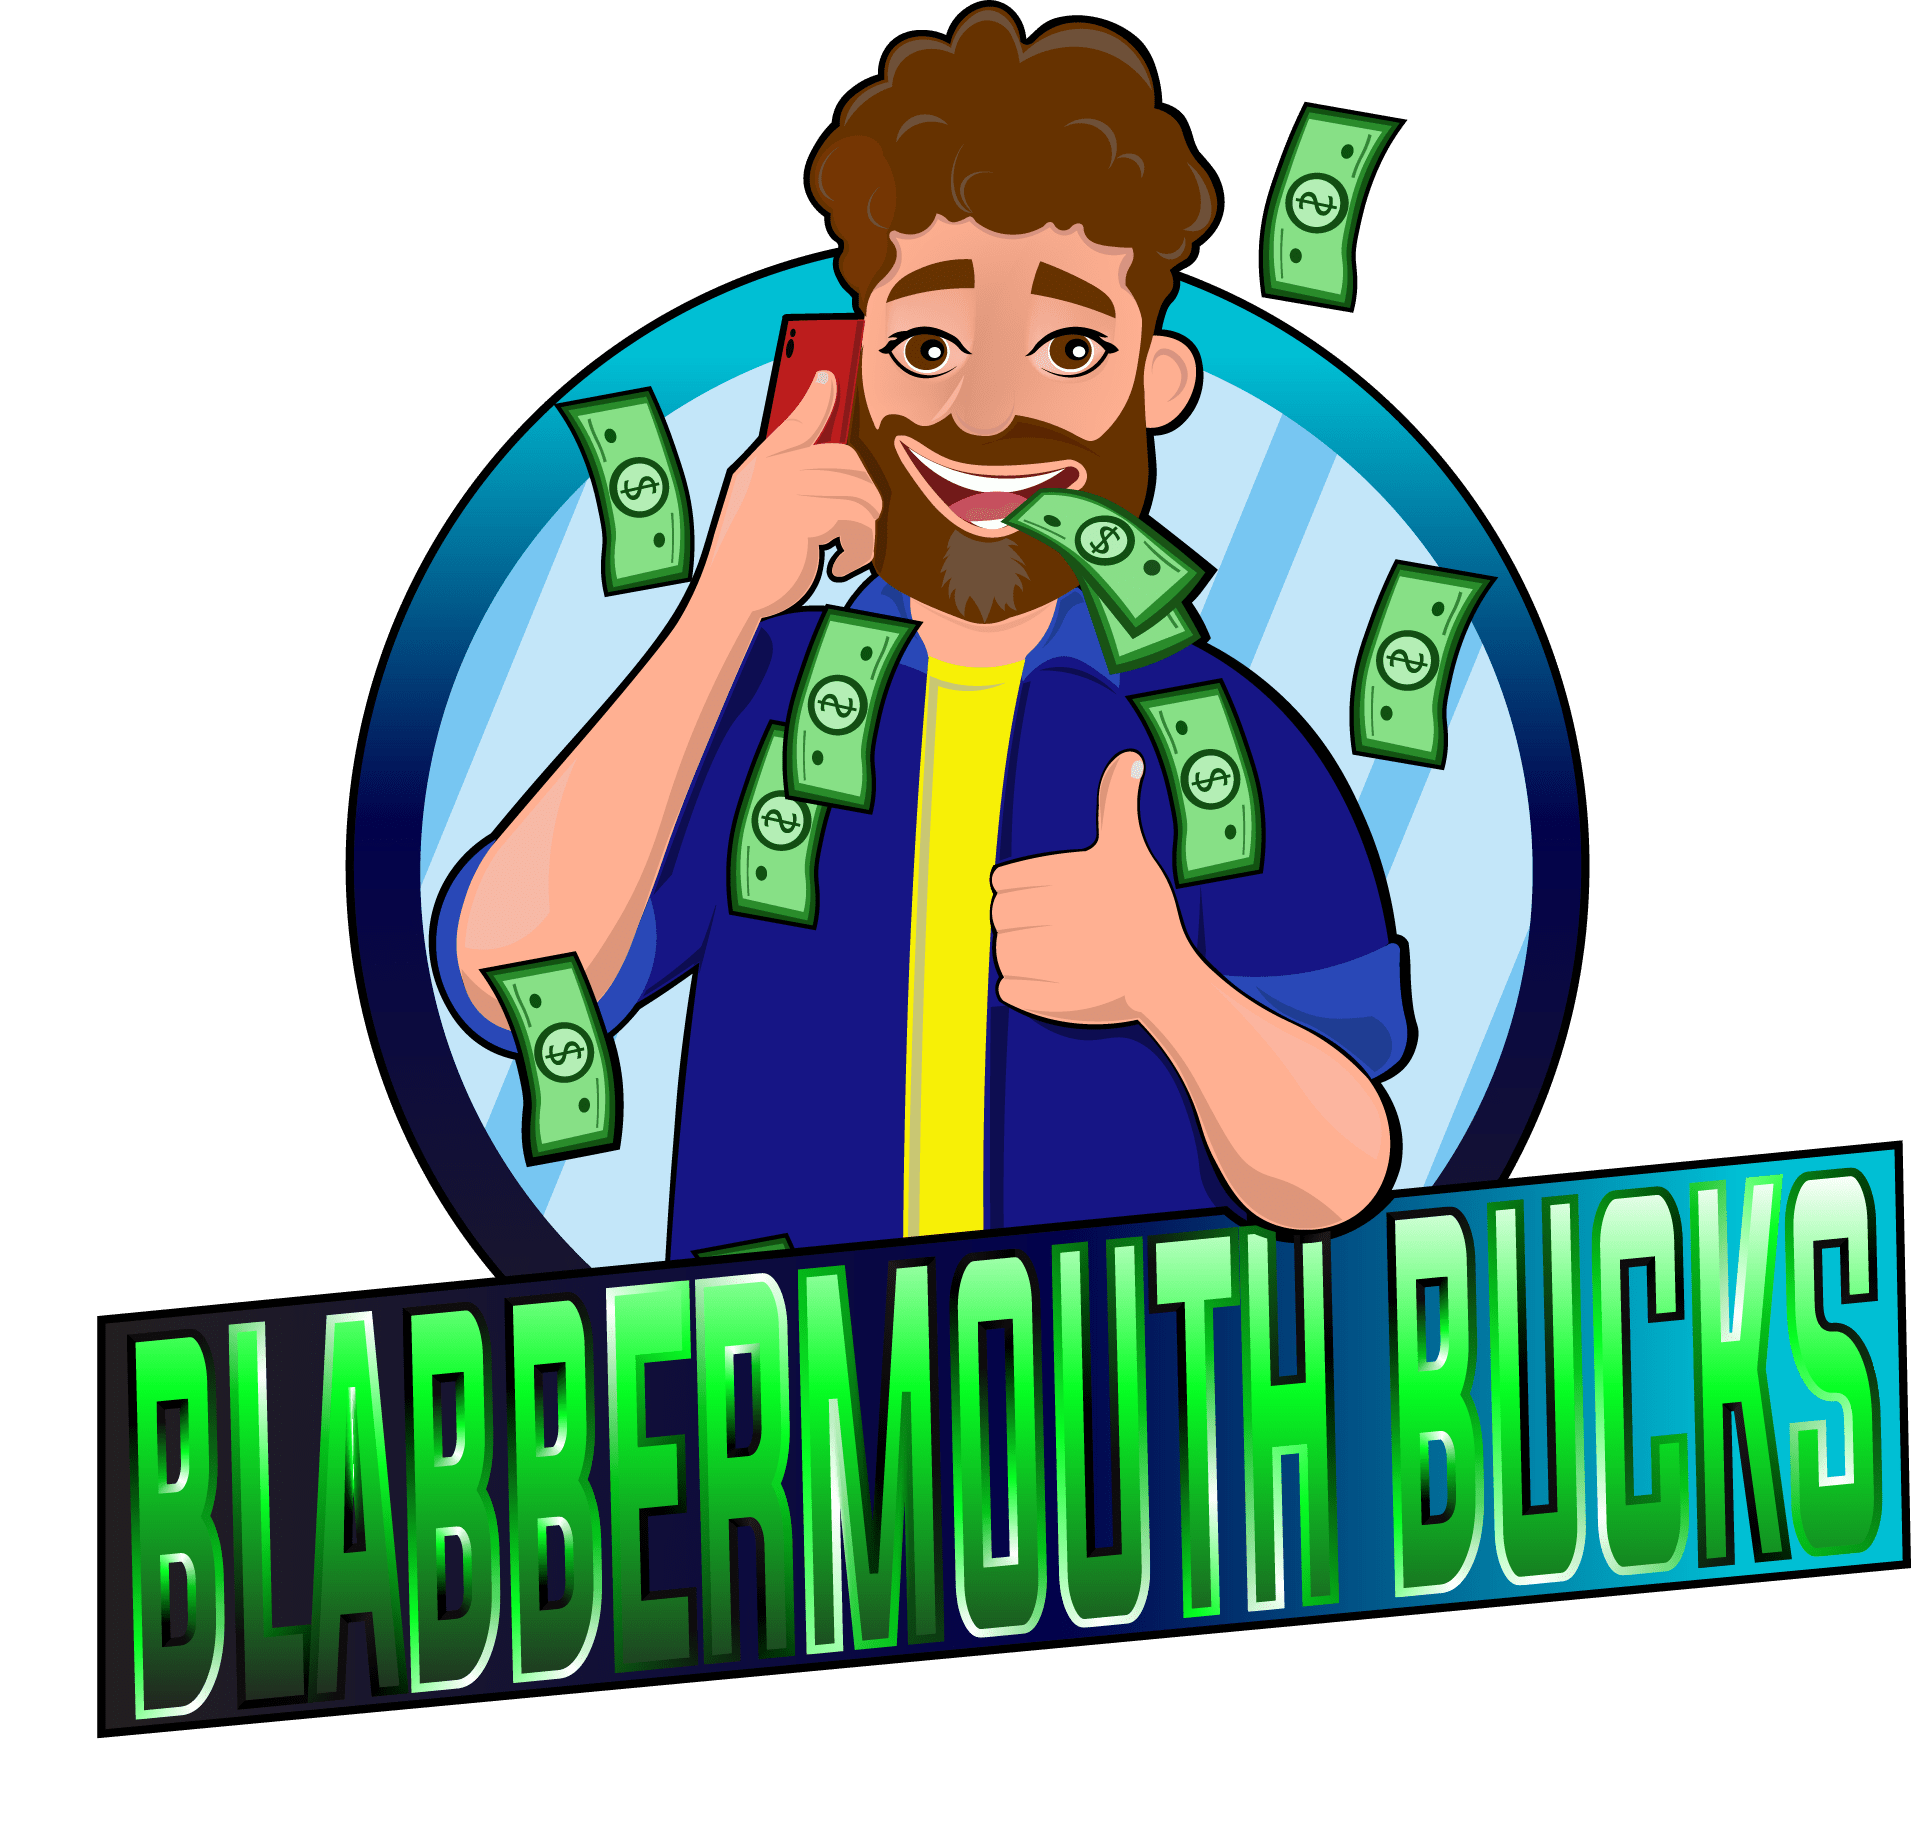 [GET] Blabbermouth Bucks Download